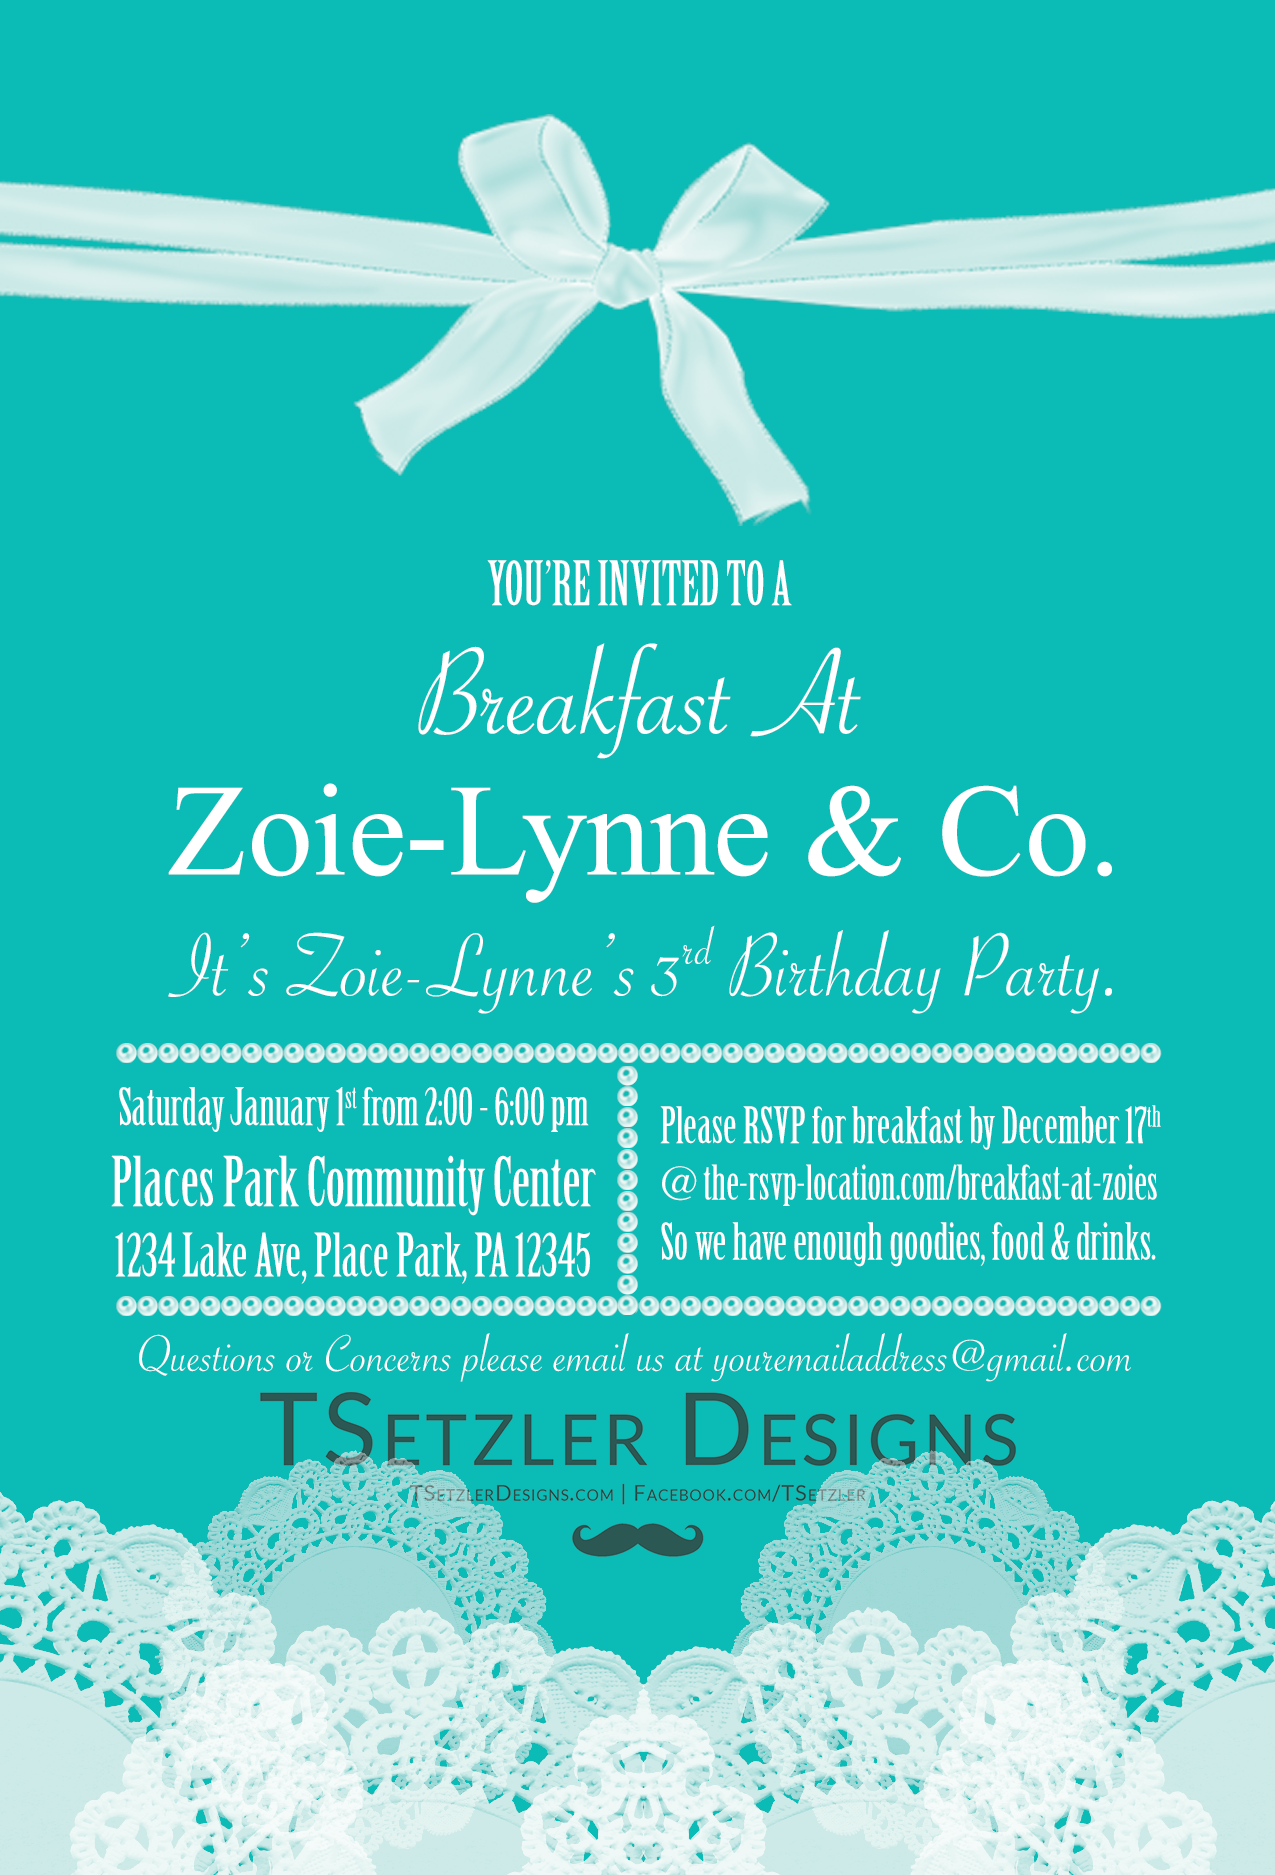 Breakfast At Zoie-Lynne & Co